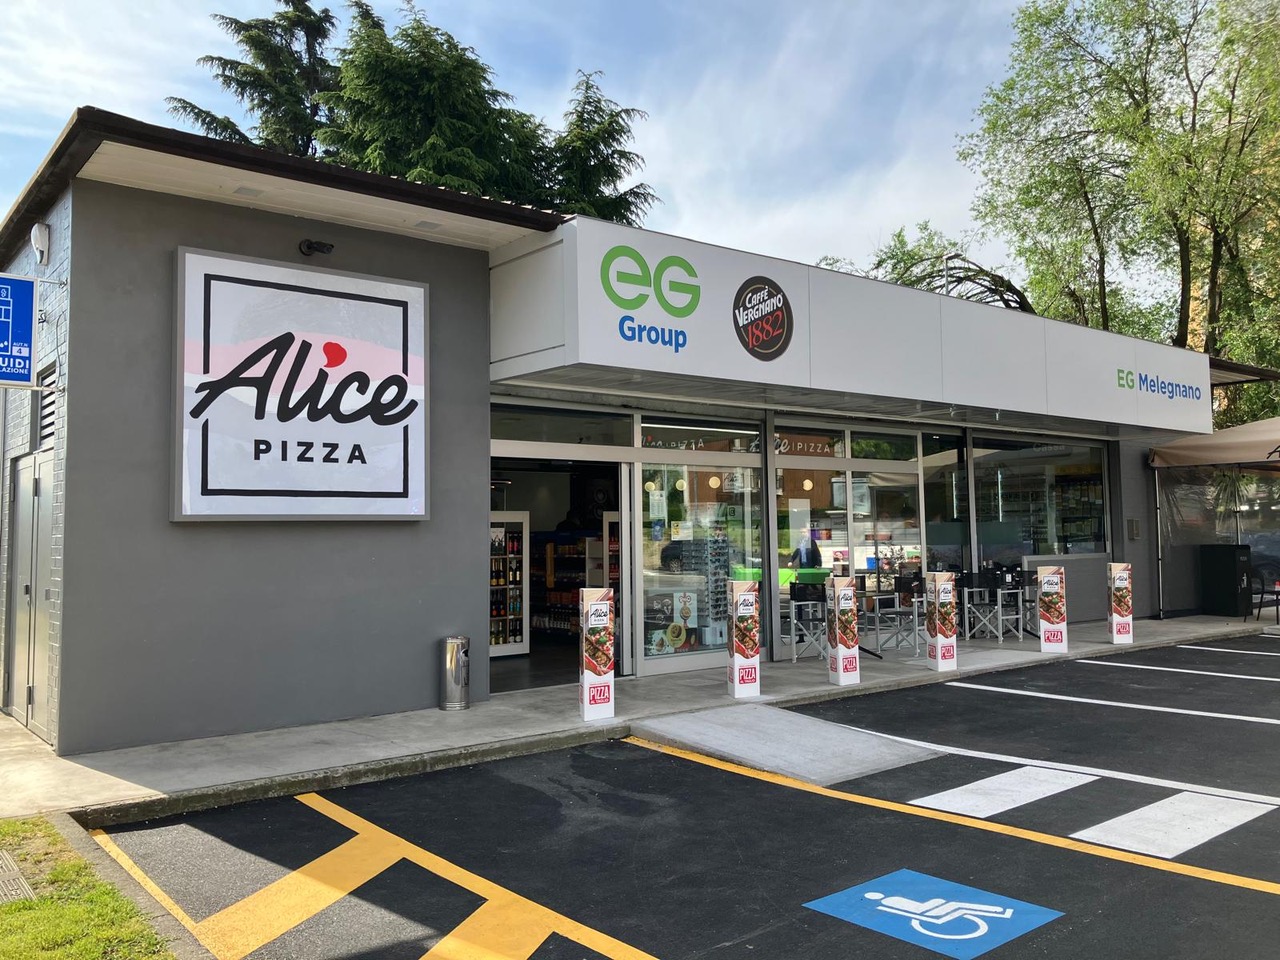 Apre Alice Pizza nella stazione EG Italia di Melegnano